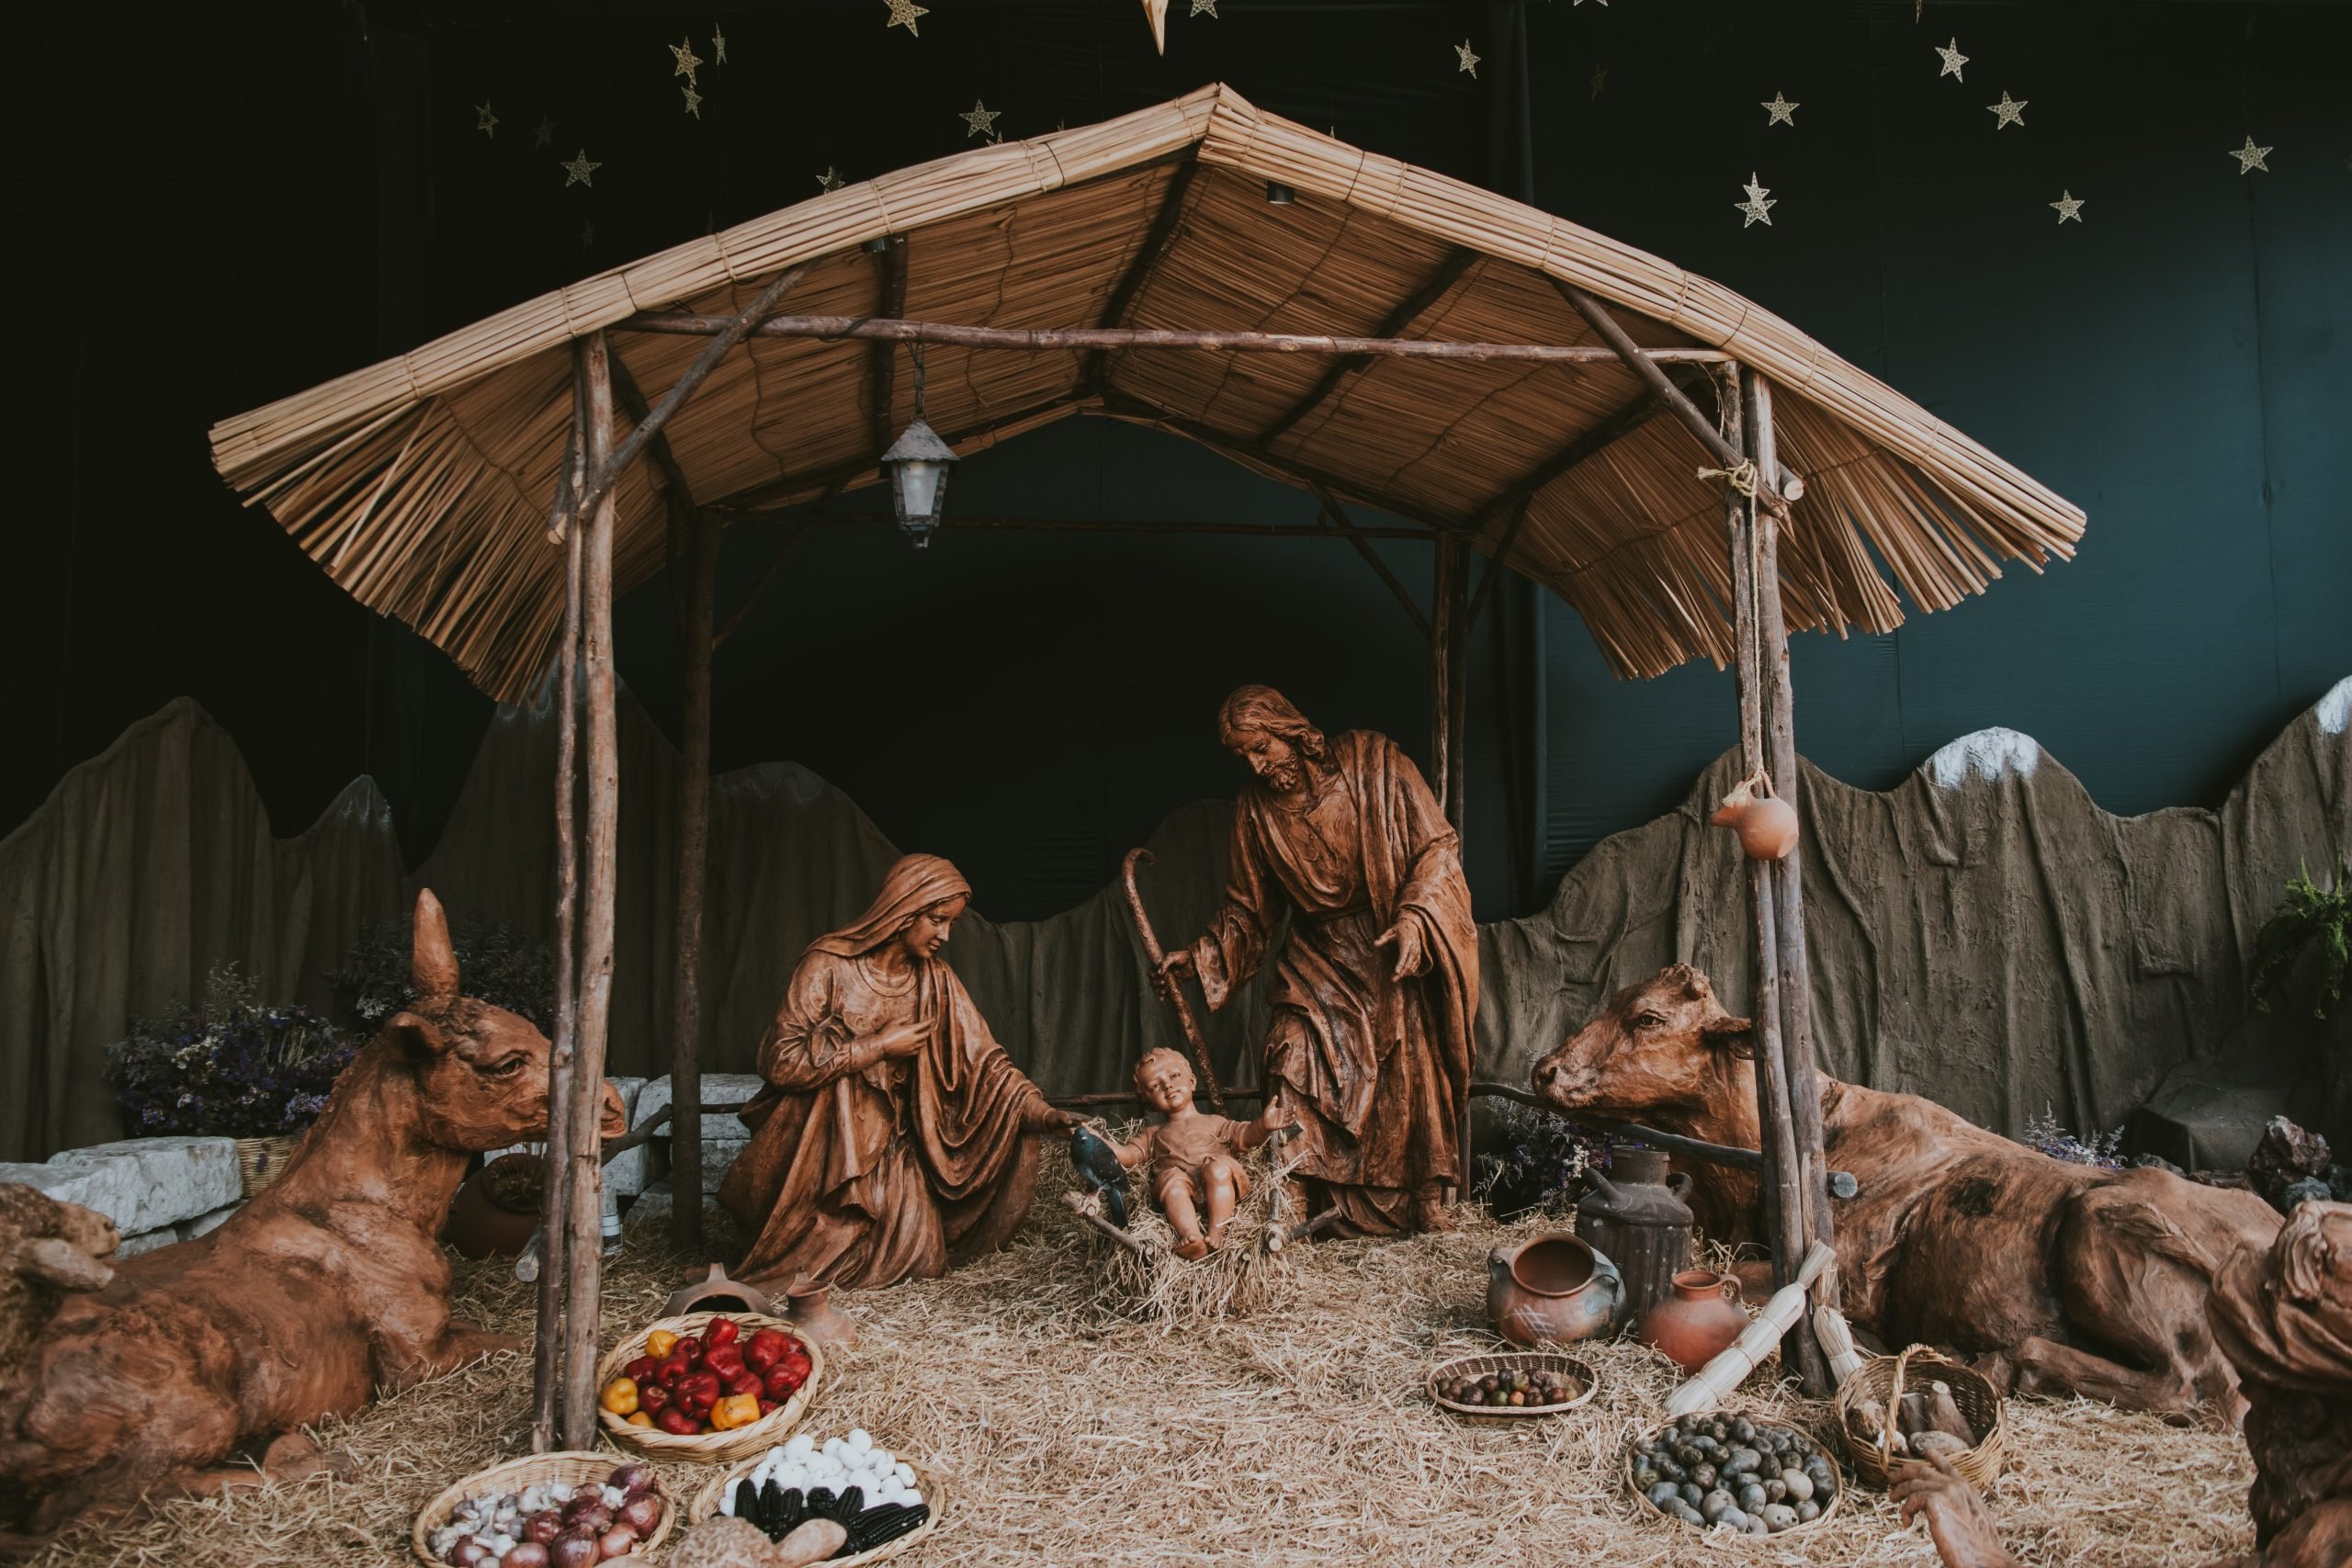 Il 25 dicembre si celebra il Natale del Signore: l’origine della festività